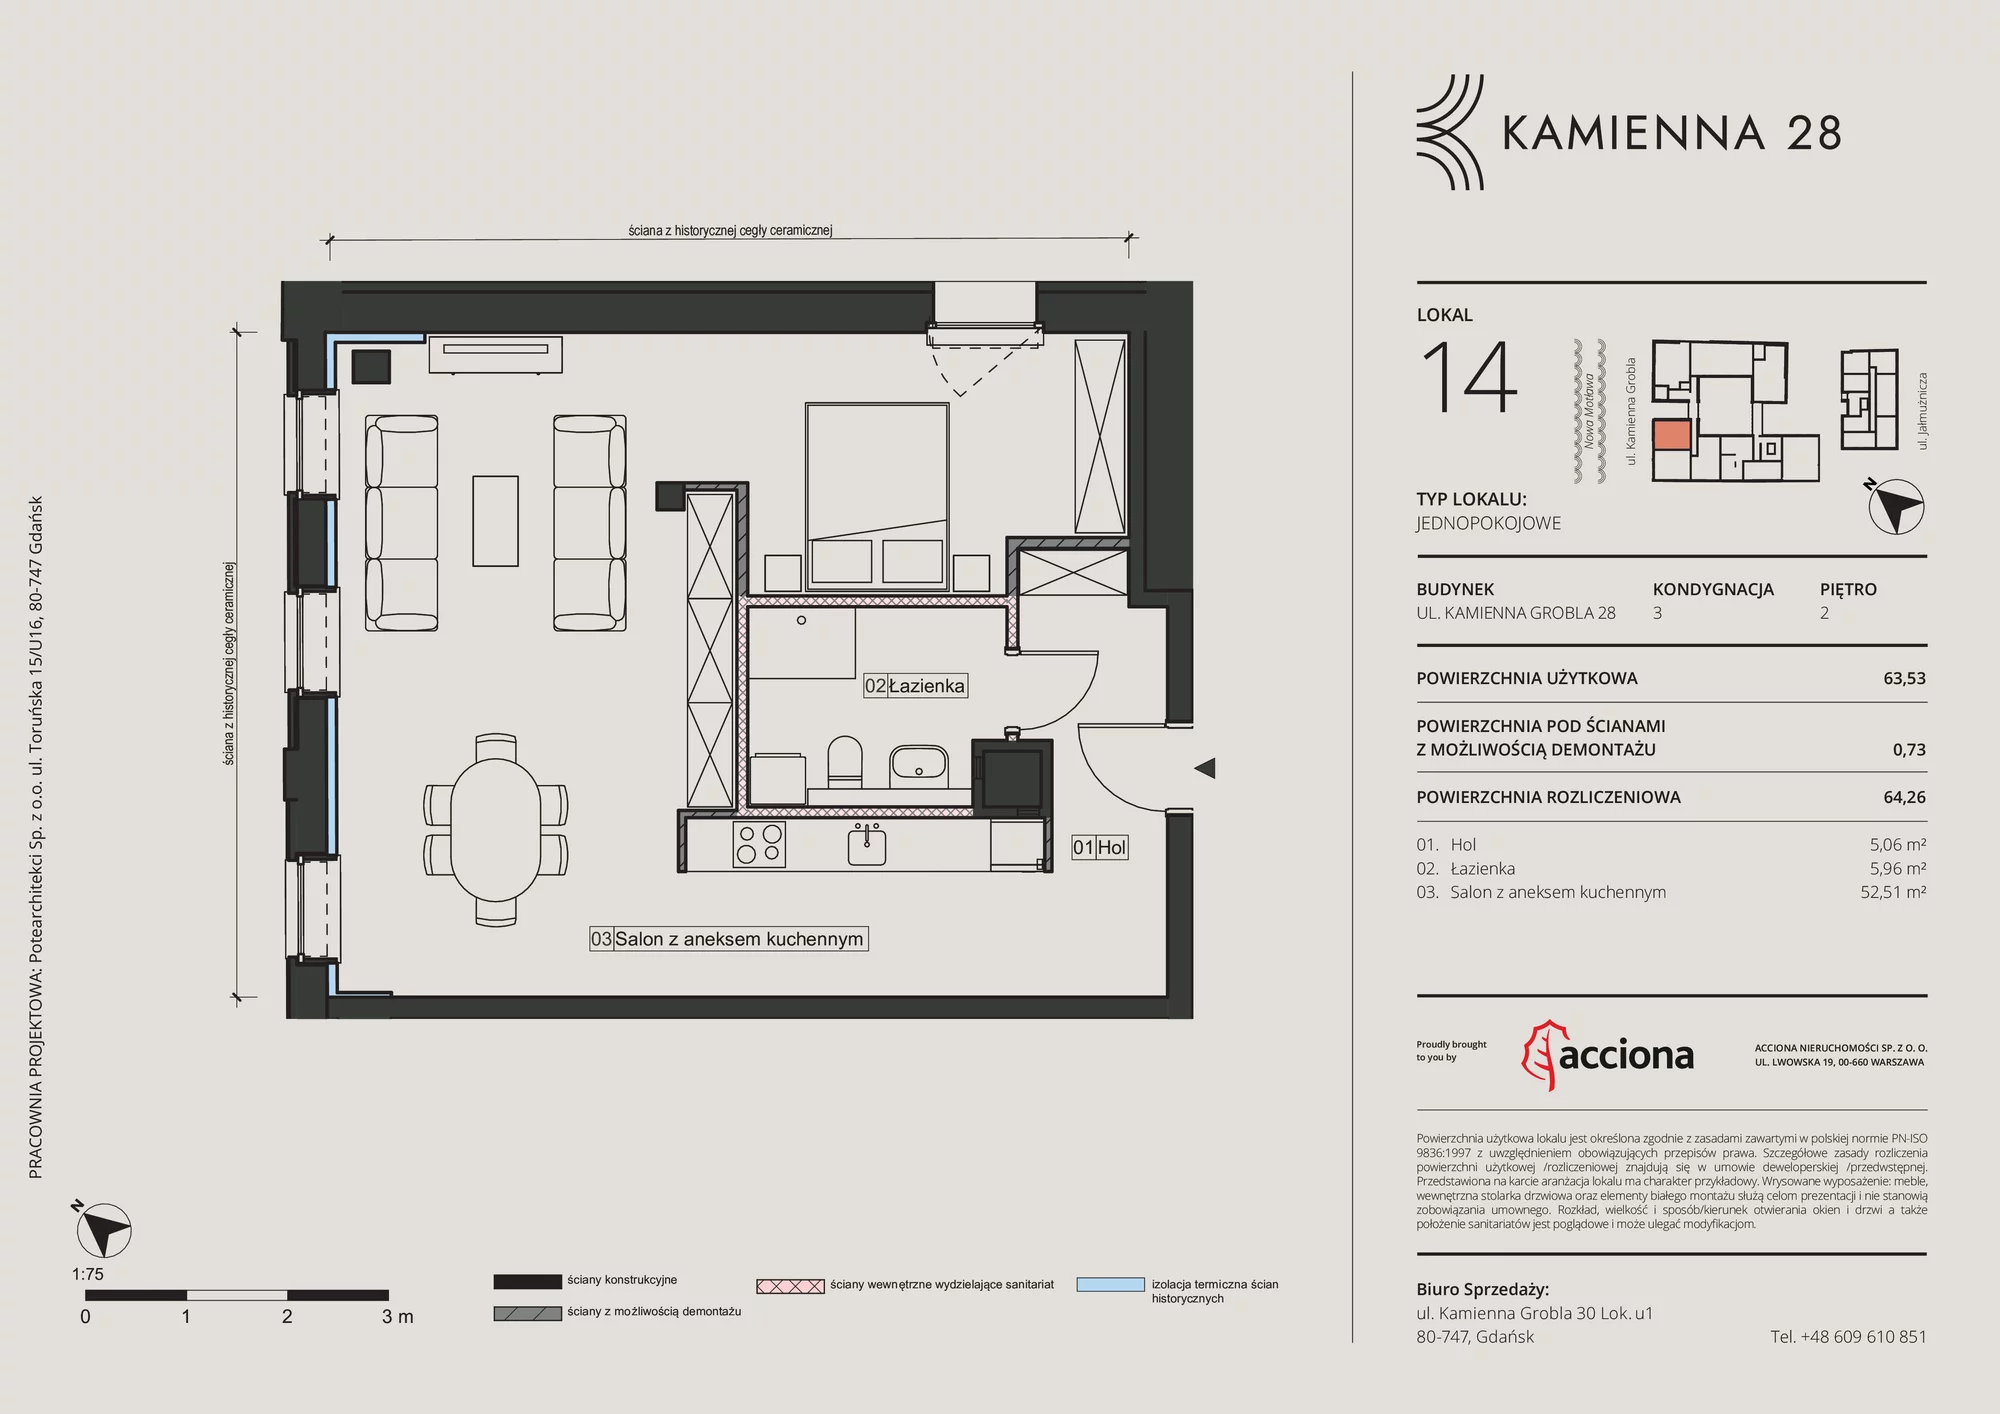 Mieszkanie 64,26 m², piętro 2, oferta nr 28.14, Kamienna 28, Gdańsk, Śródmieście, Dolne Miasto, ul. Kamienna Grobla 28/29